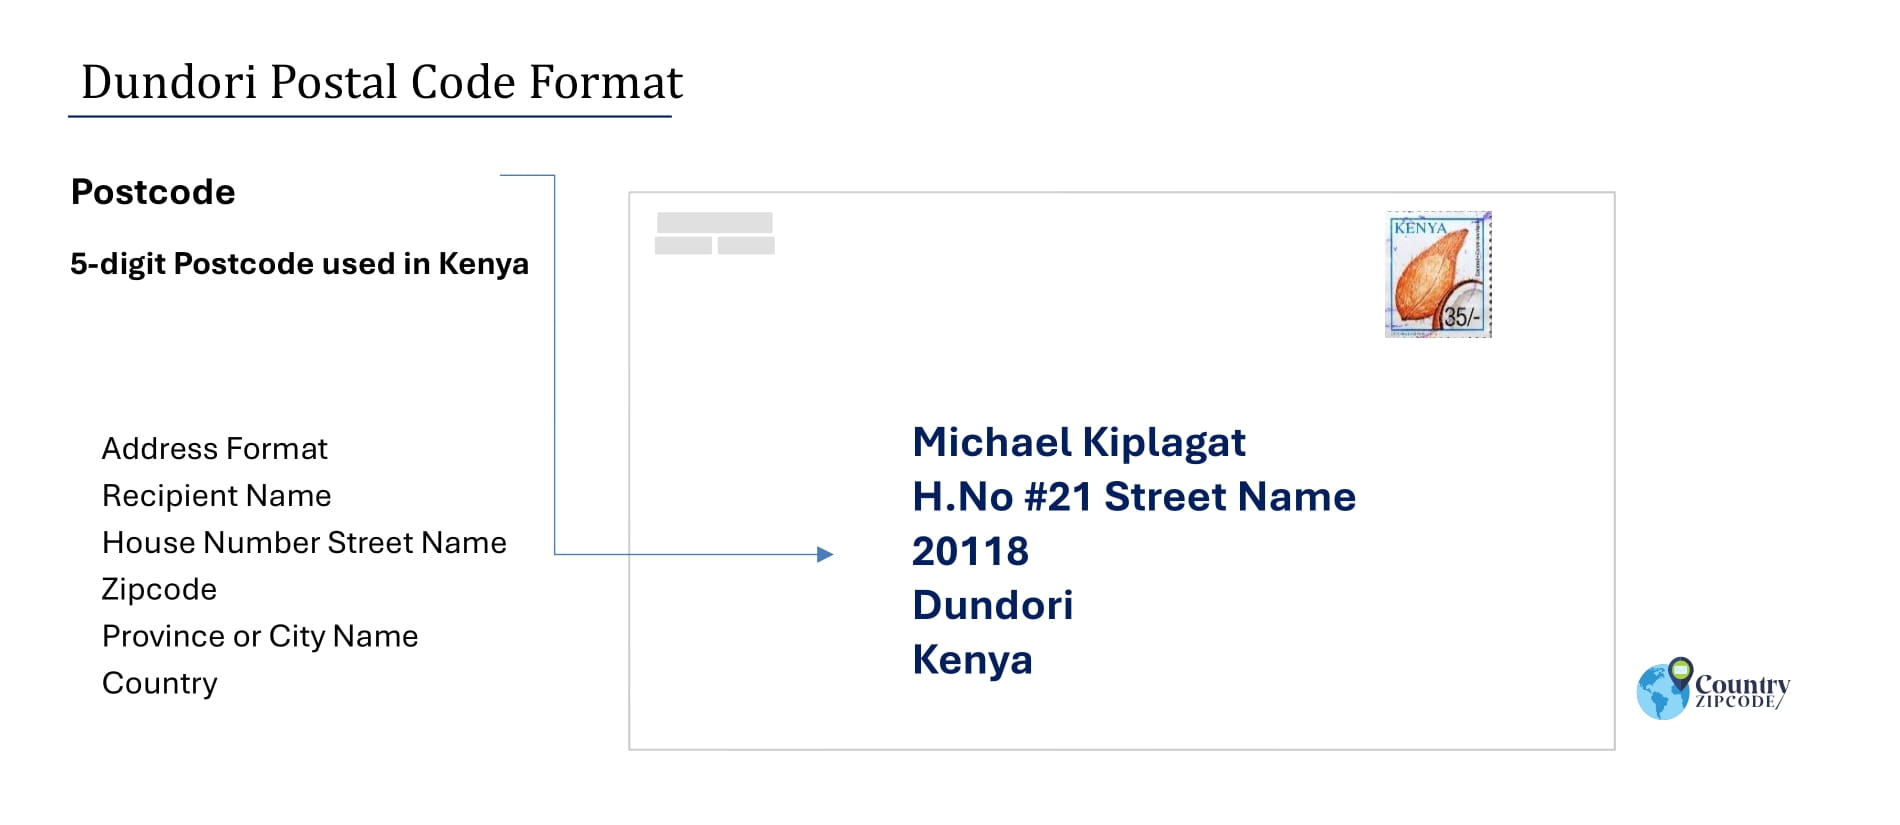 Example of Dundori Address and postal code format